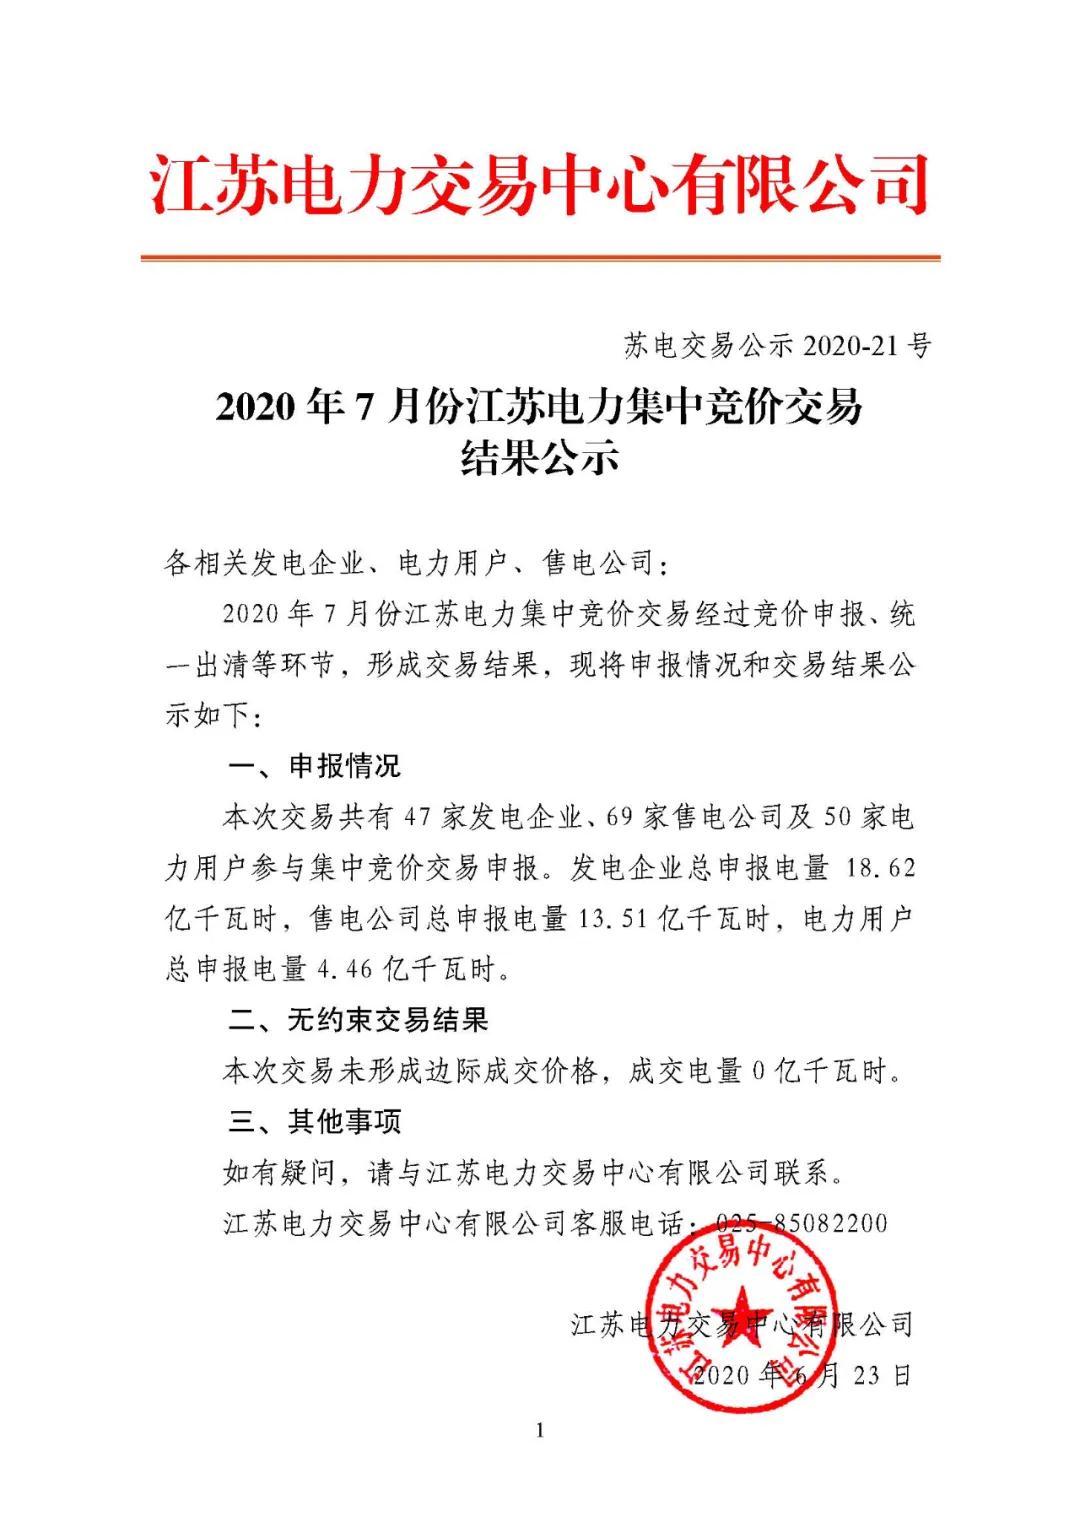 《2020年7月份江苏电力集中竞价交易结果公示》2.jpg